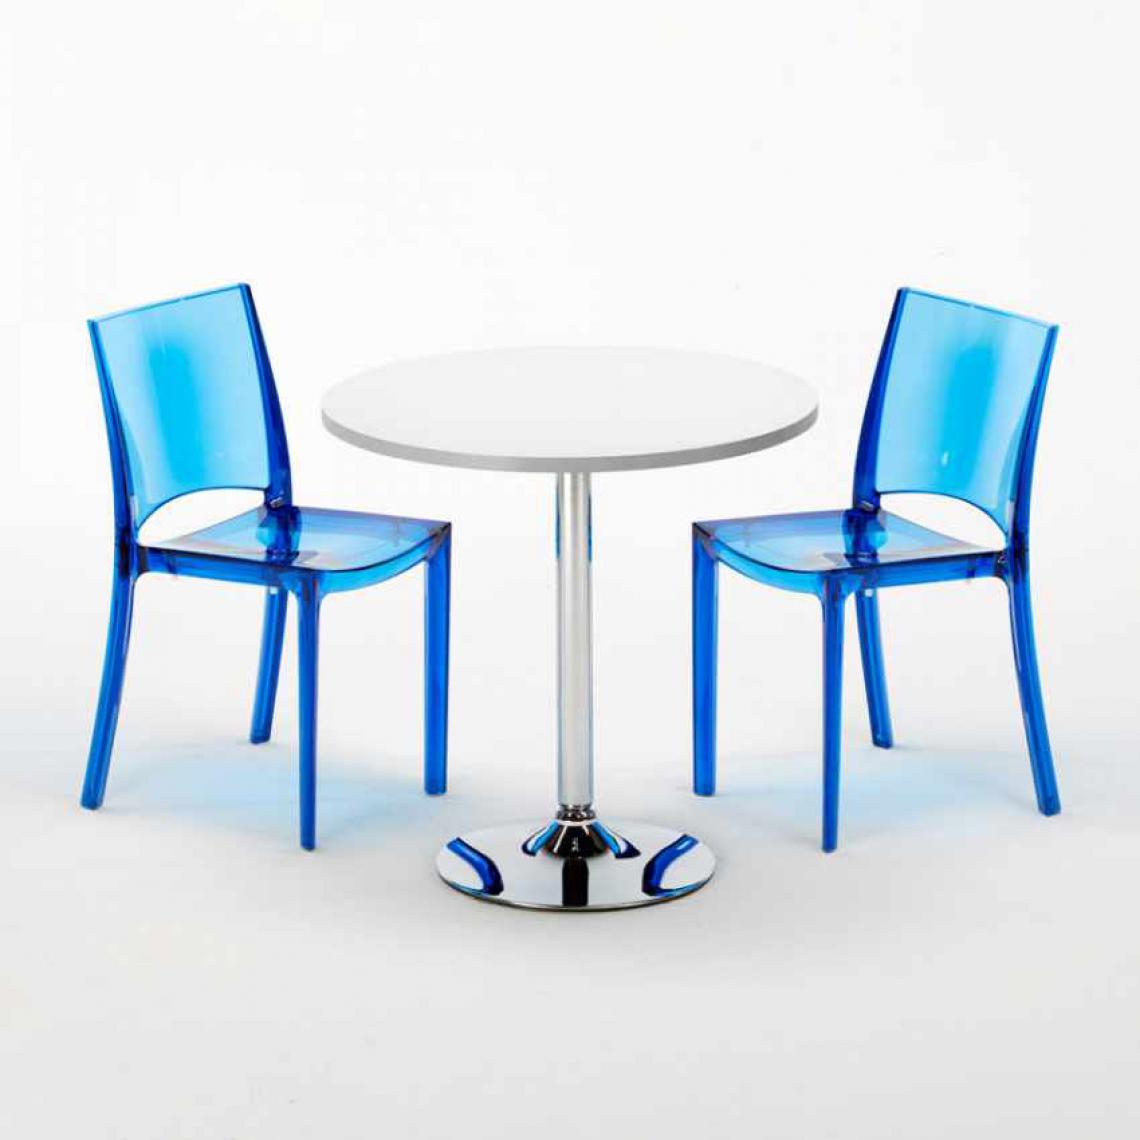 Grand Soleil - Table Ronde Blanche 70x70cm Avec 2 Chaises Colorées Grand Soleil Set Intérieur Bar Café B-Side Spectre, Couleur: Bleu transparent - Tables à manger